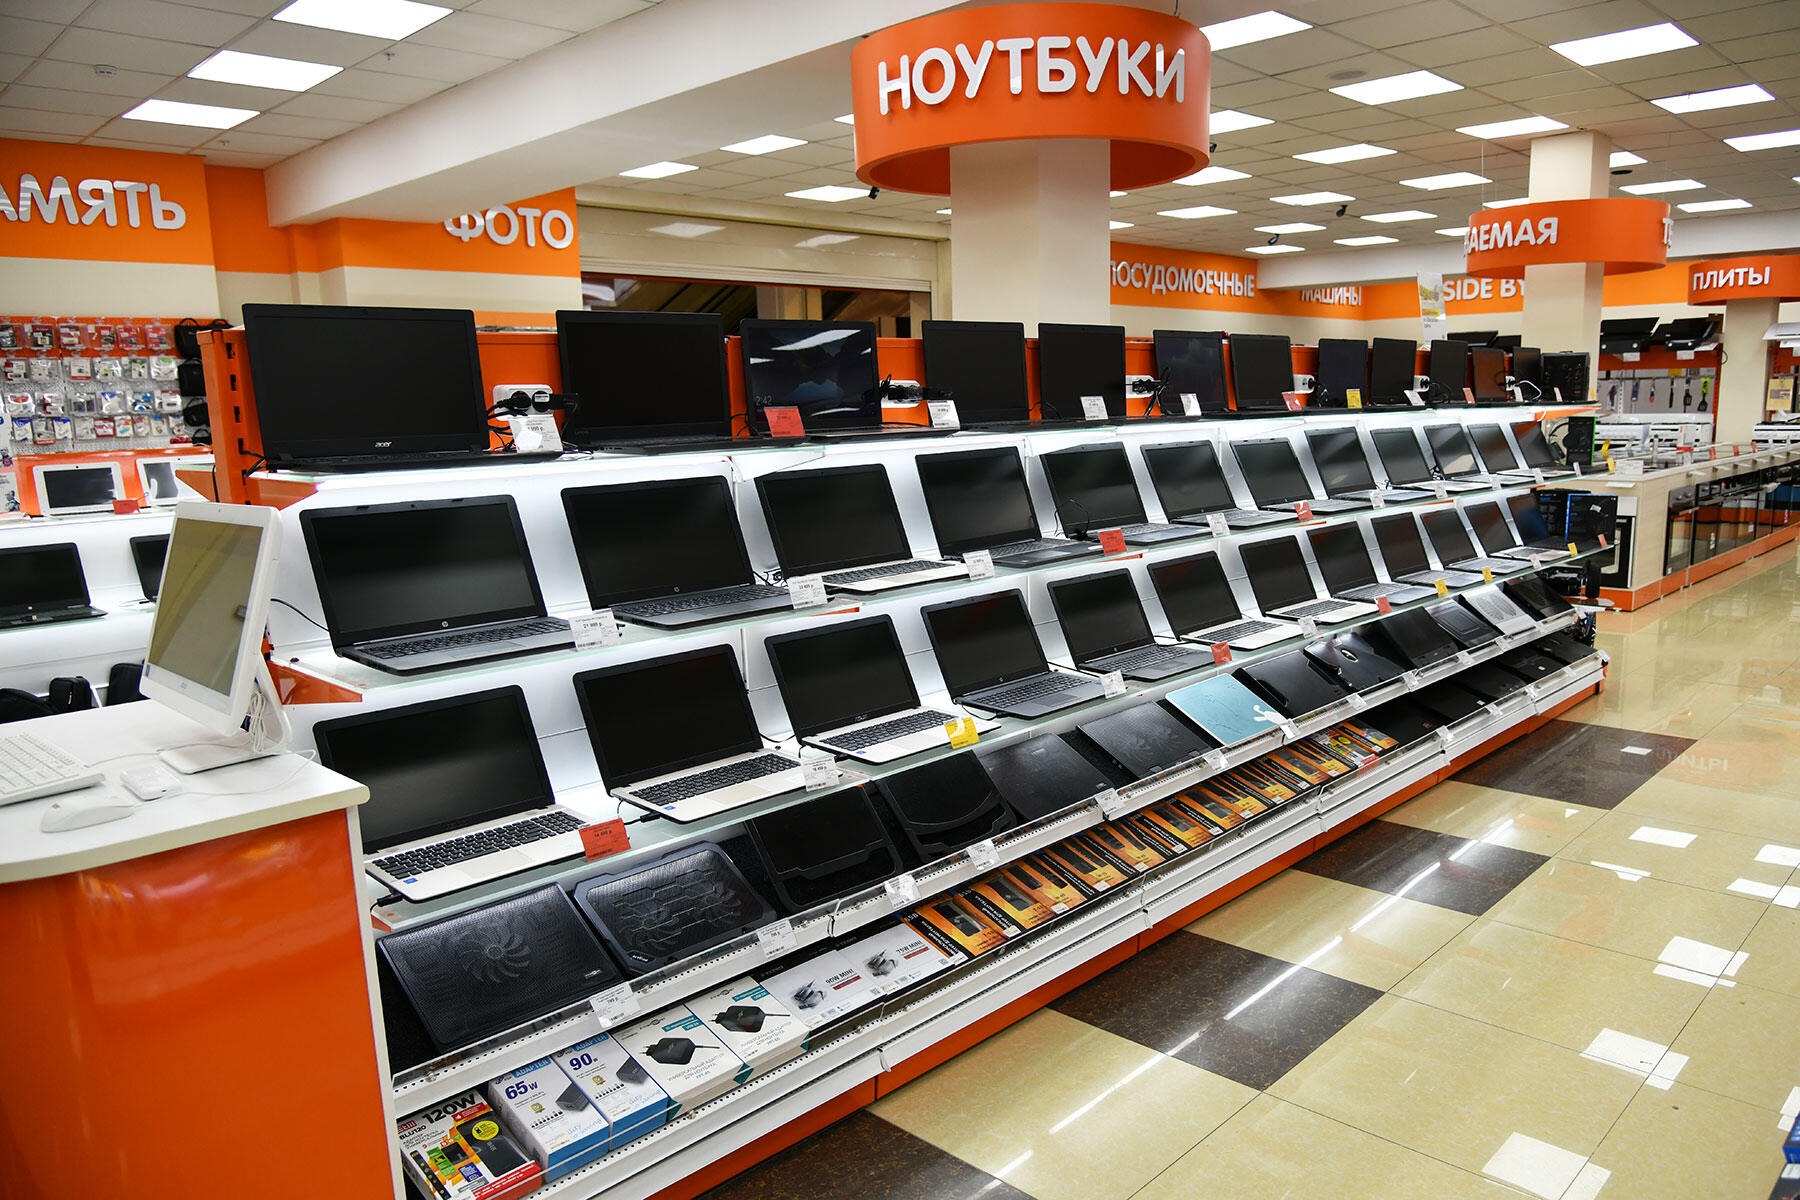 Купить Ноутбук В Новосибирске В Магазине